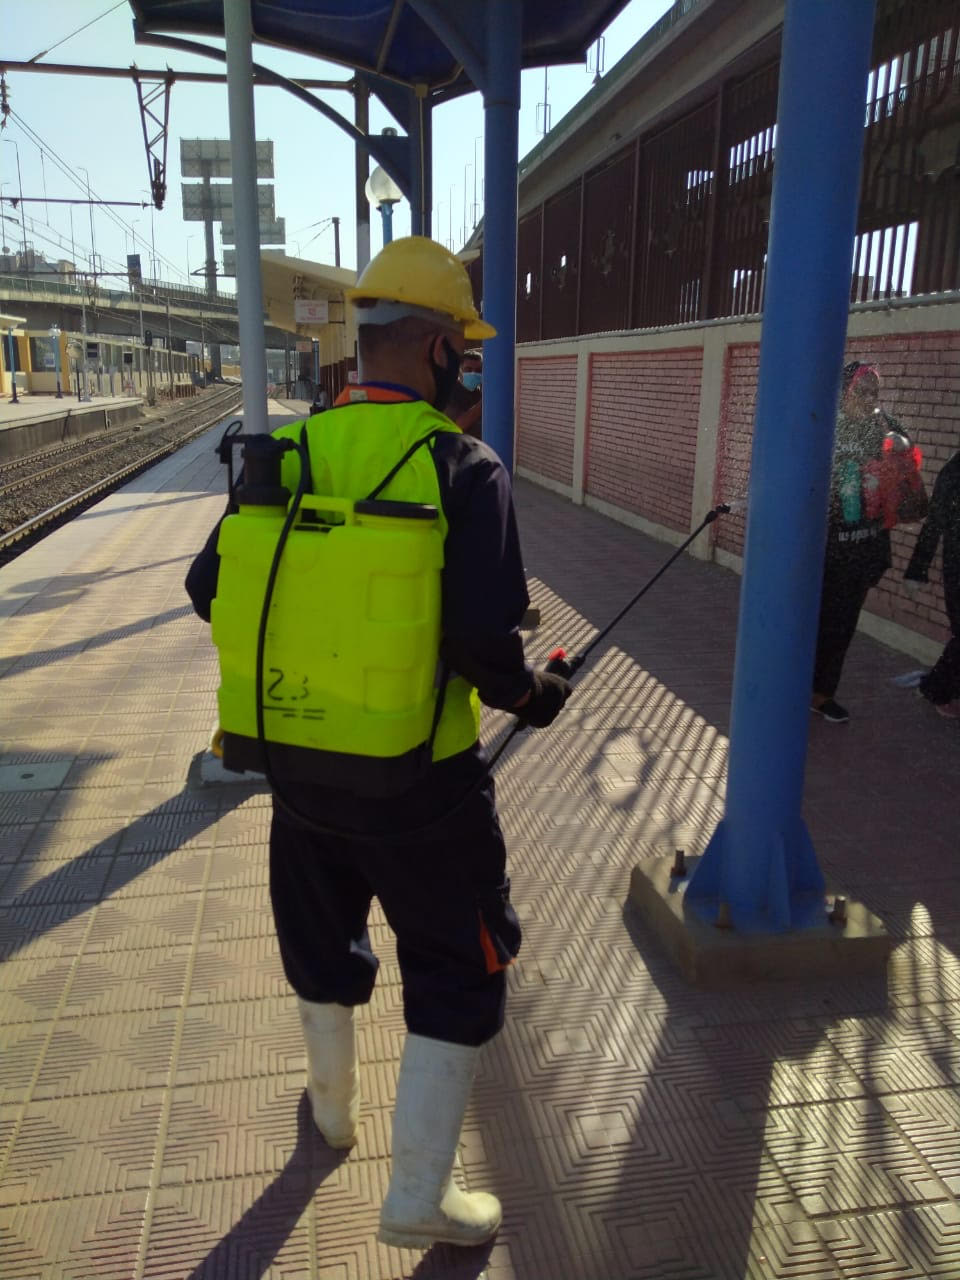 شركة المترو تواصل أعمال تعقيم وتطهير المحطات والقطارات ضد كورونا (8)